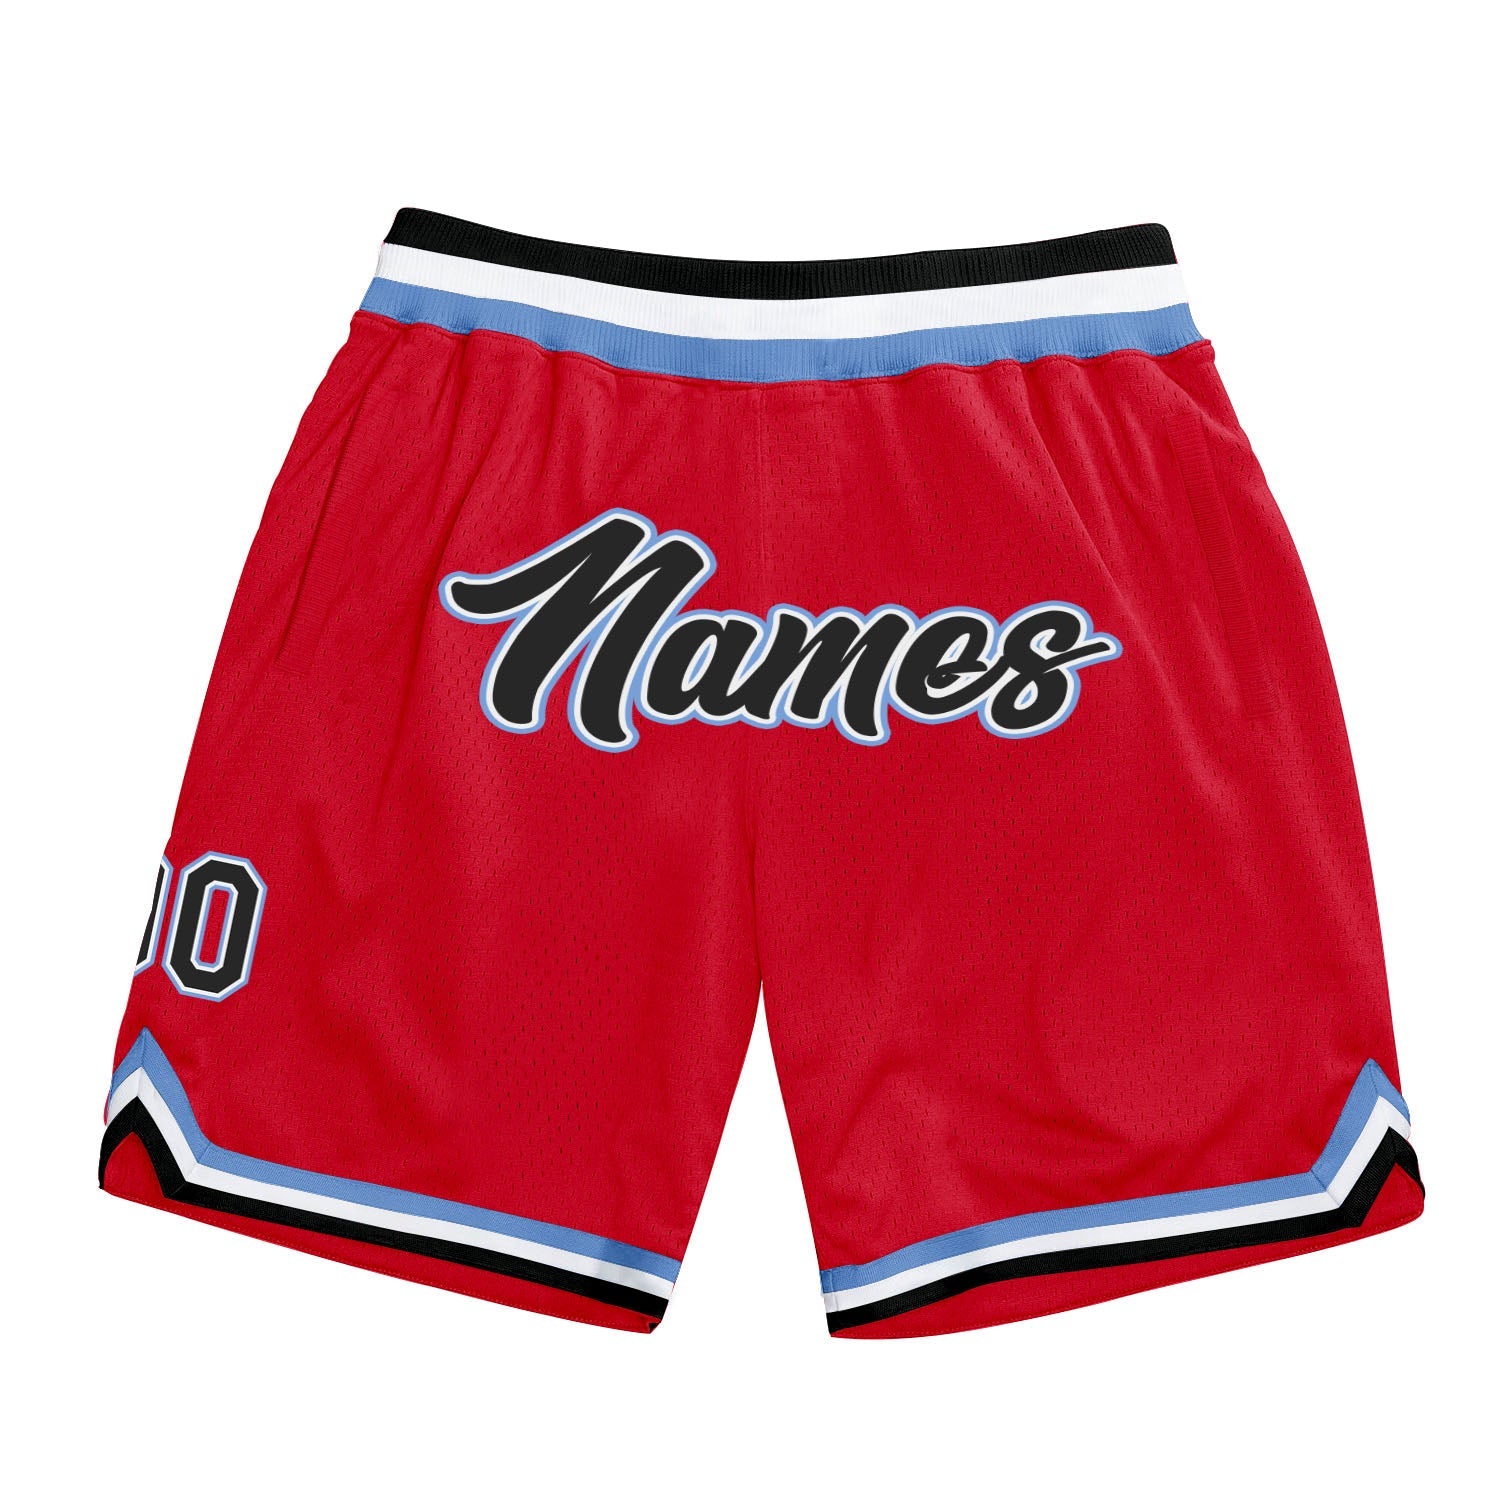 Shorts de basquete autênticos, vermelhos, pretos e azuis claros, personalizados